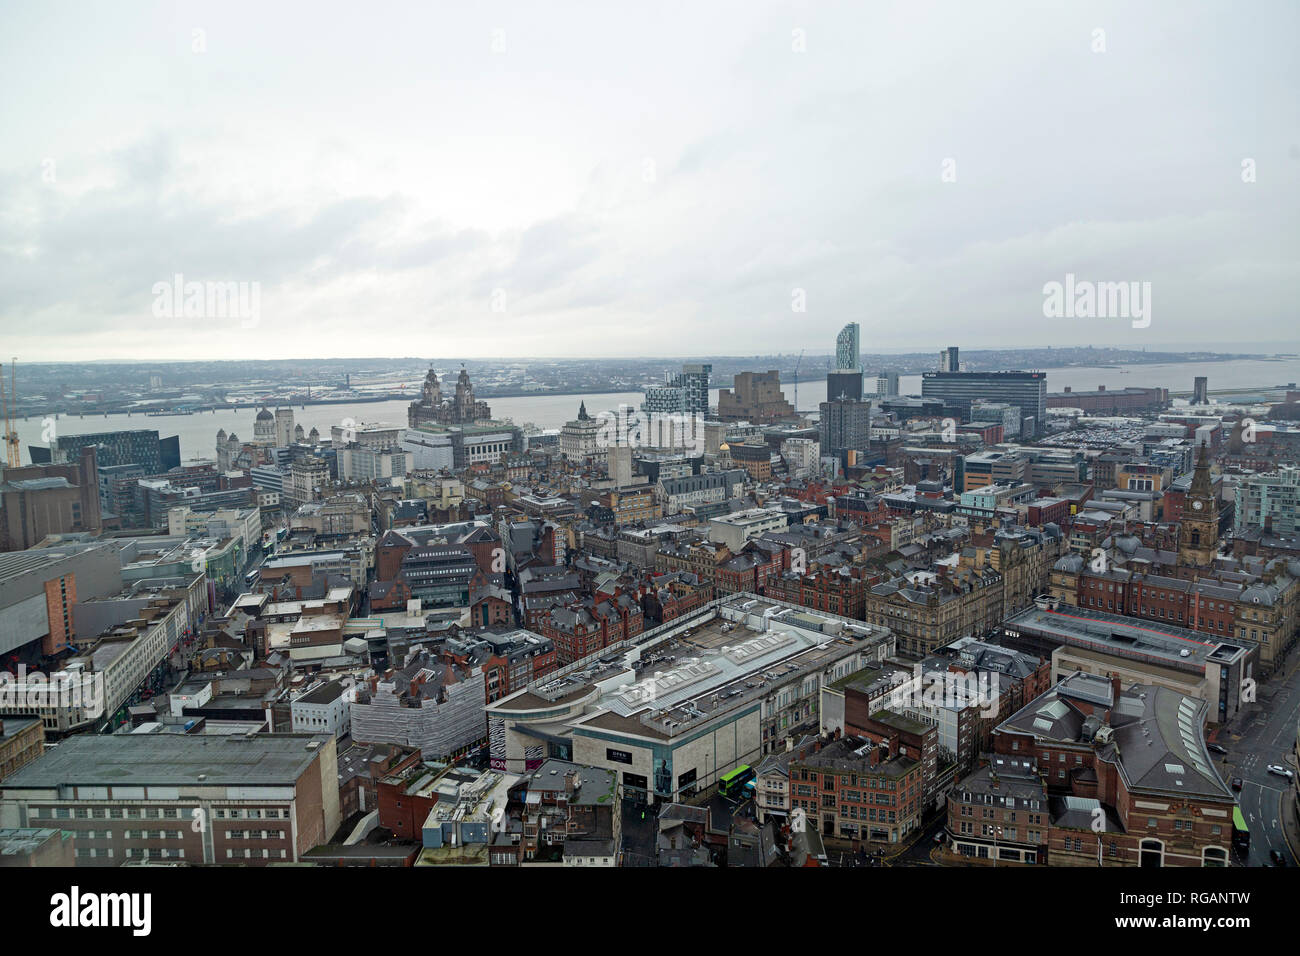 La ville de Liverpool, dans le nord-ouest de l'Angleterre. La Mersey passe devant l'Pier Head. Banque D'Images